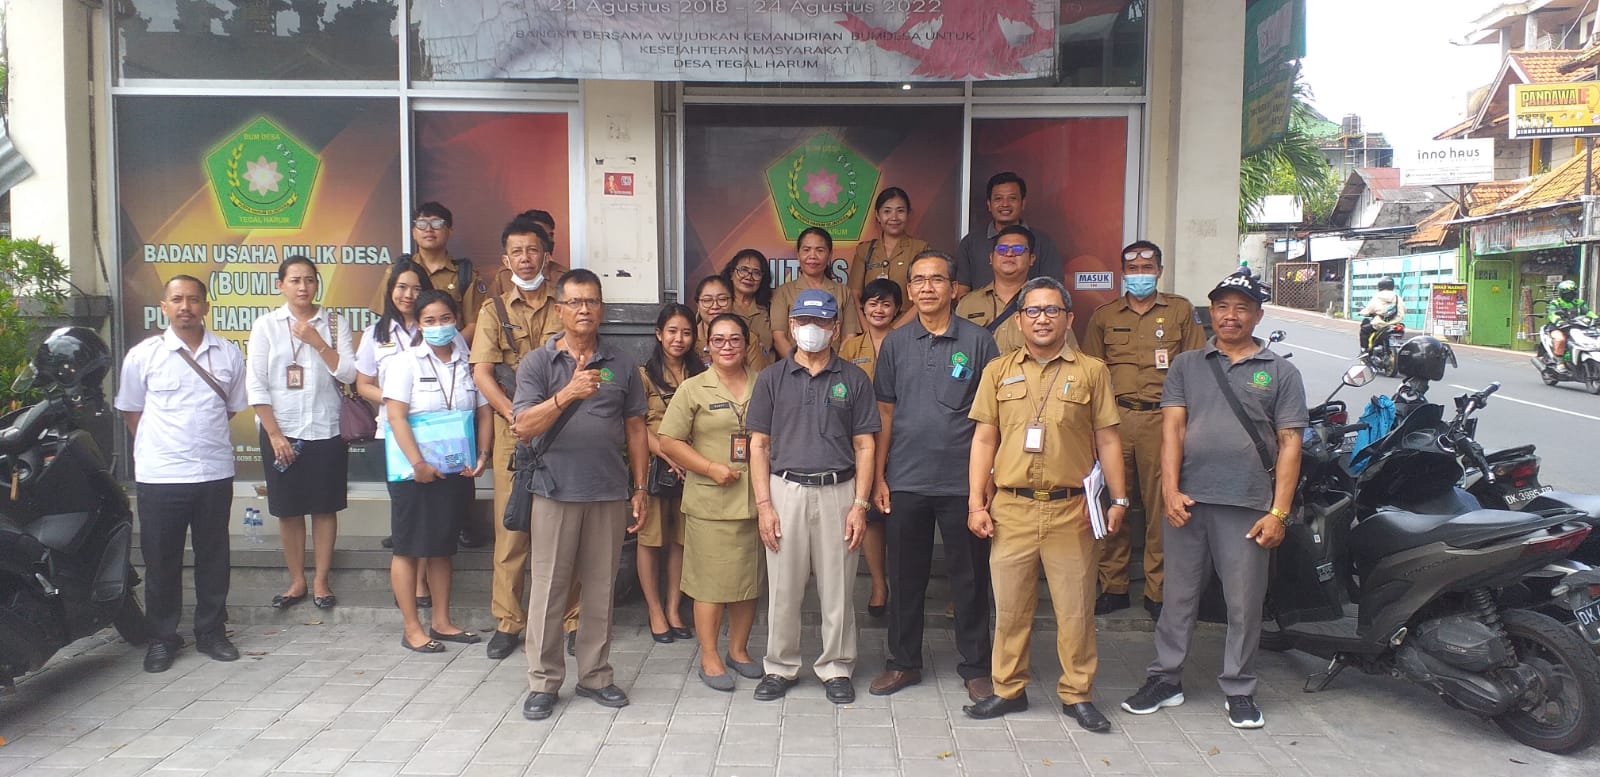 Kunjungan Tim Monev Badan Usaha Milik Desa (BUMDESA) Kota Denpasar ke  BUM Desa Puspa Harum Sejahtera Tegal Harum 